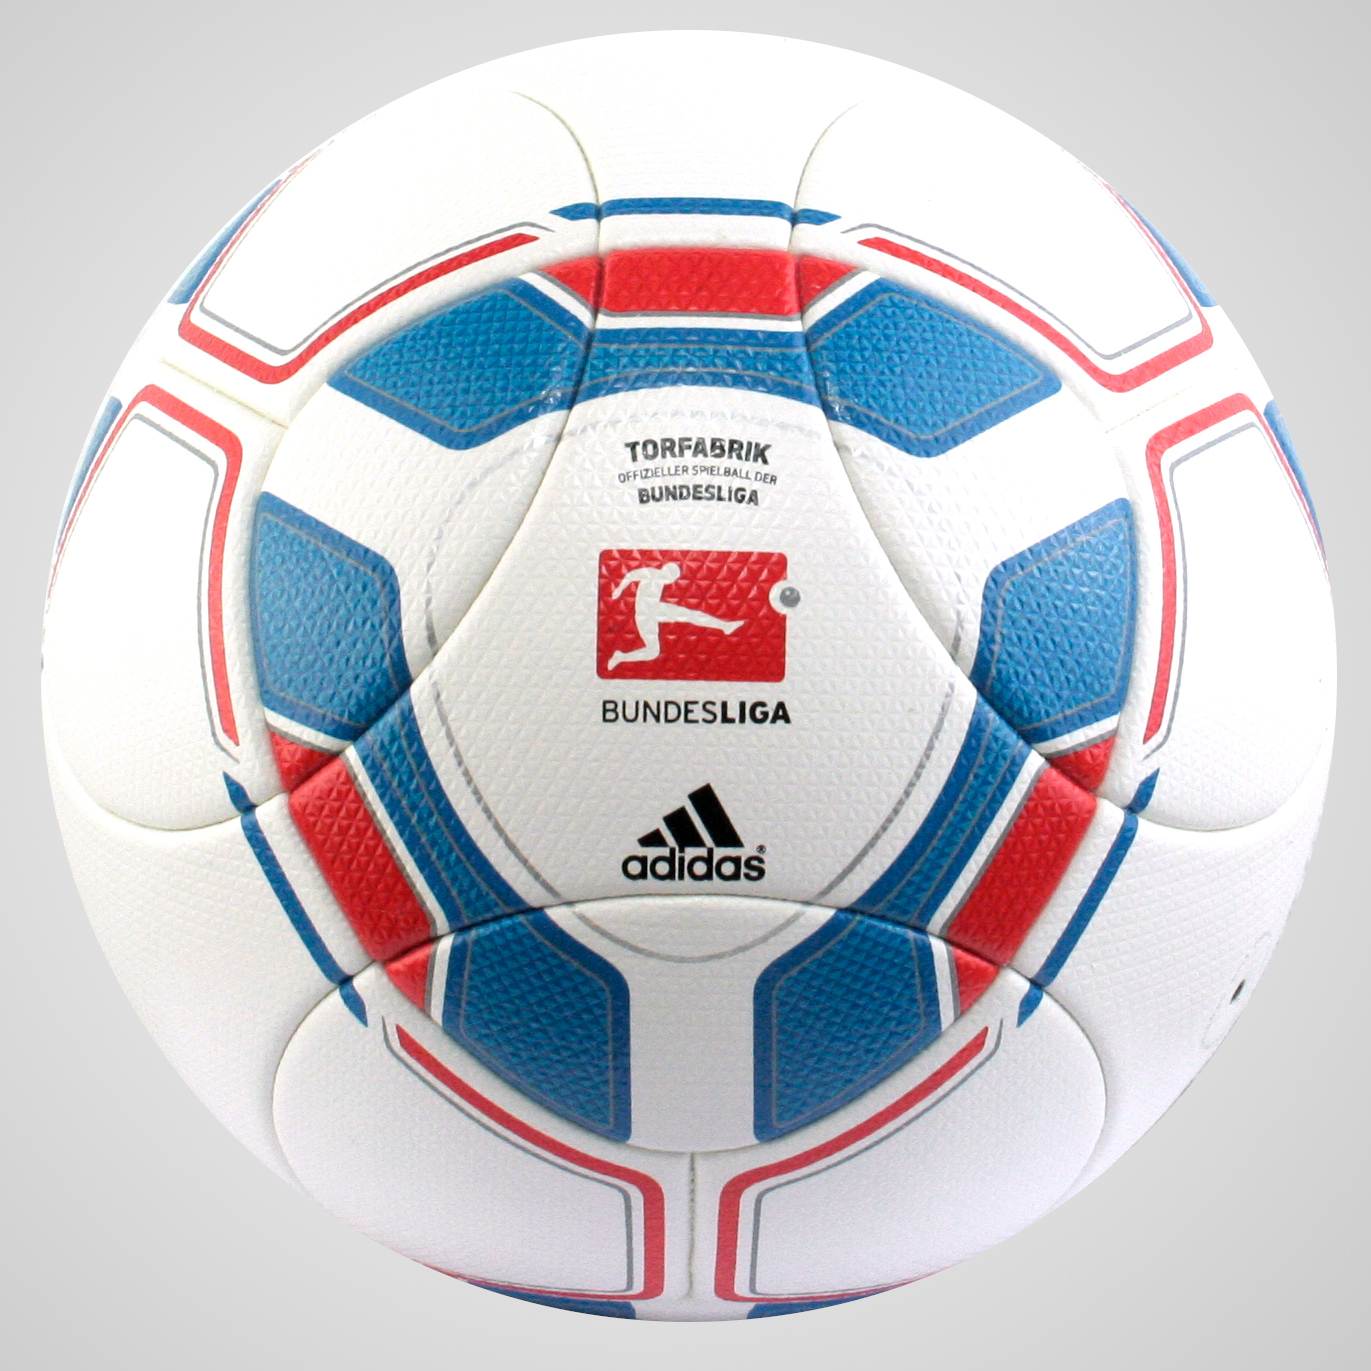 Adidas Torfabrik 2011 Official Matchball